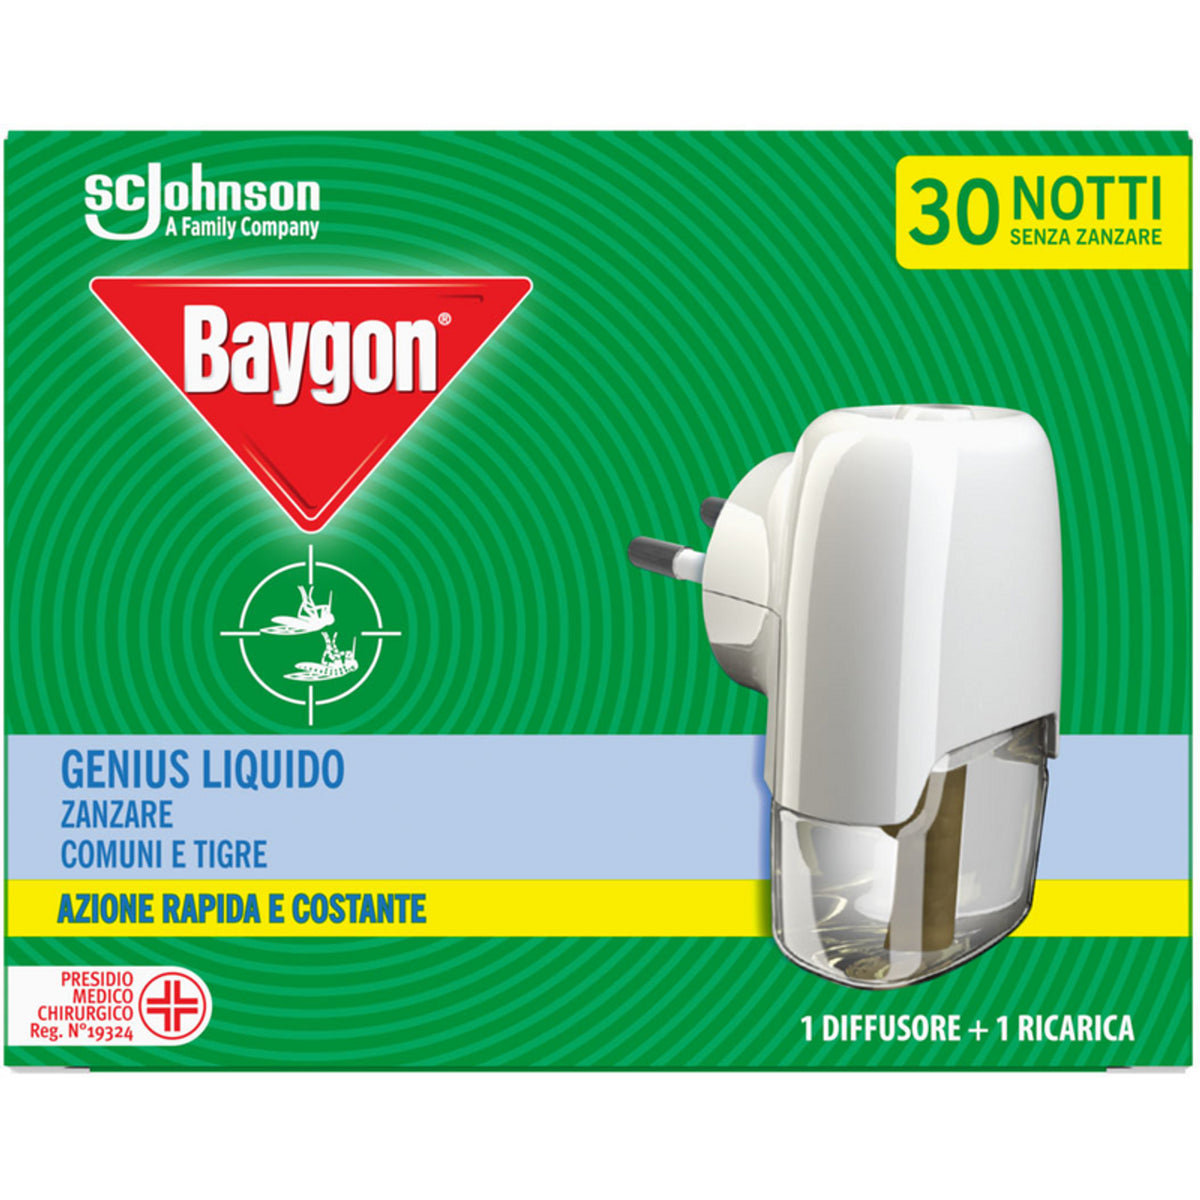 Baygon Genius grundlegender flüssiger Insektizid+Ladung